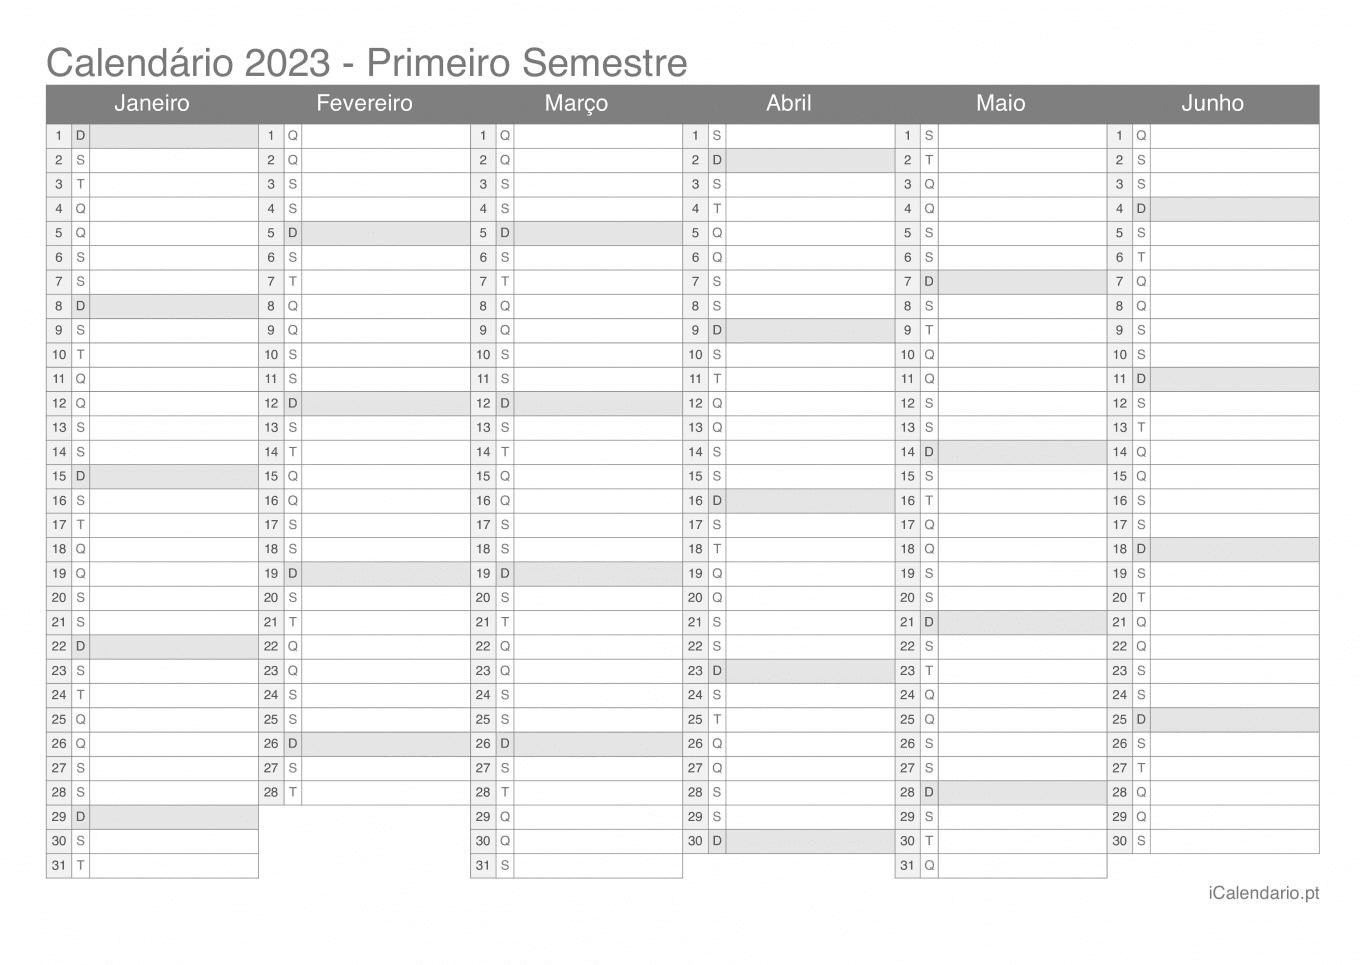 Calendário por semestre 2023